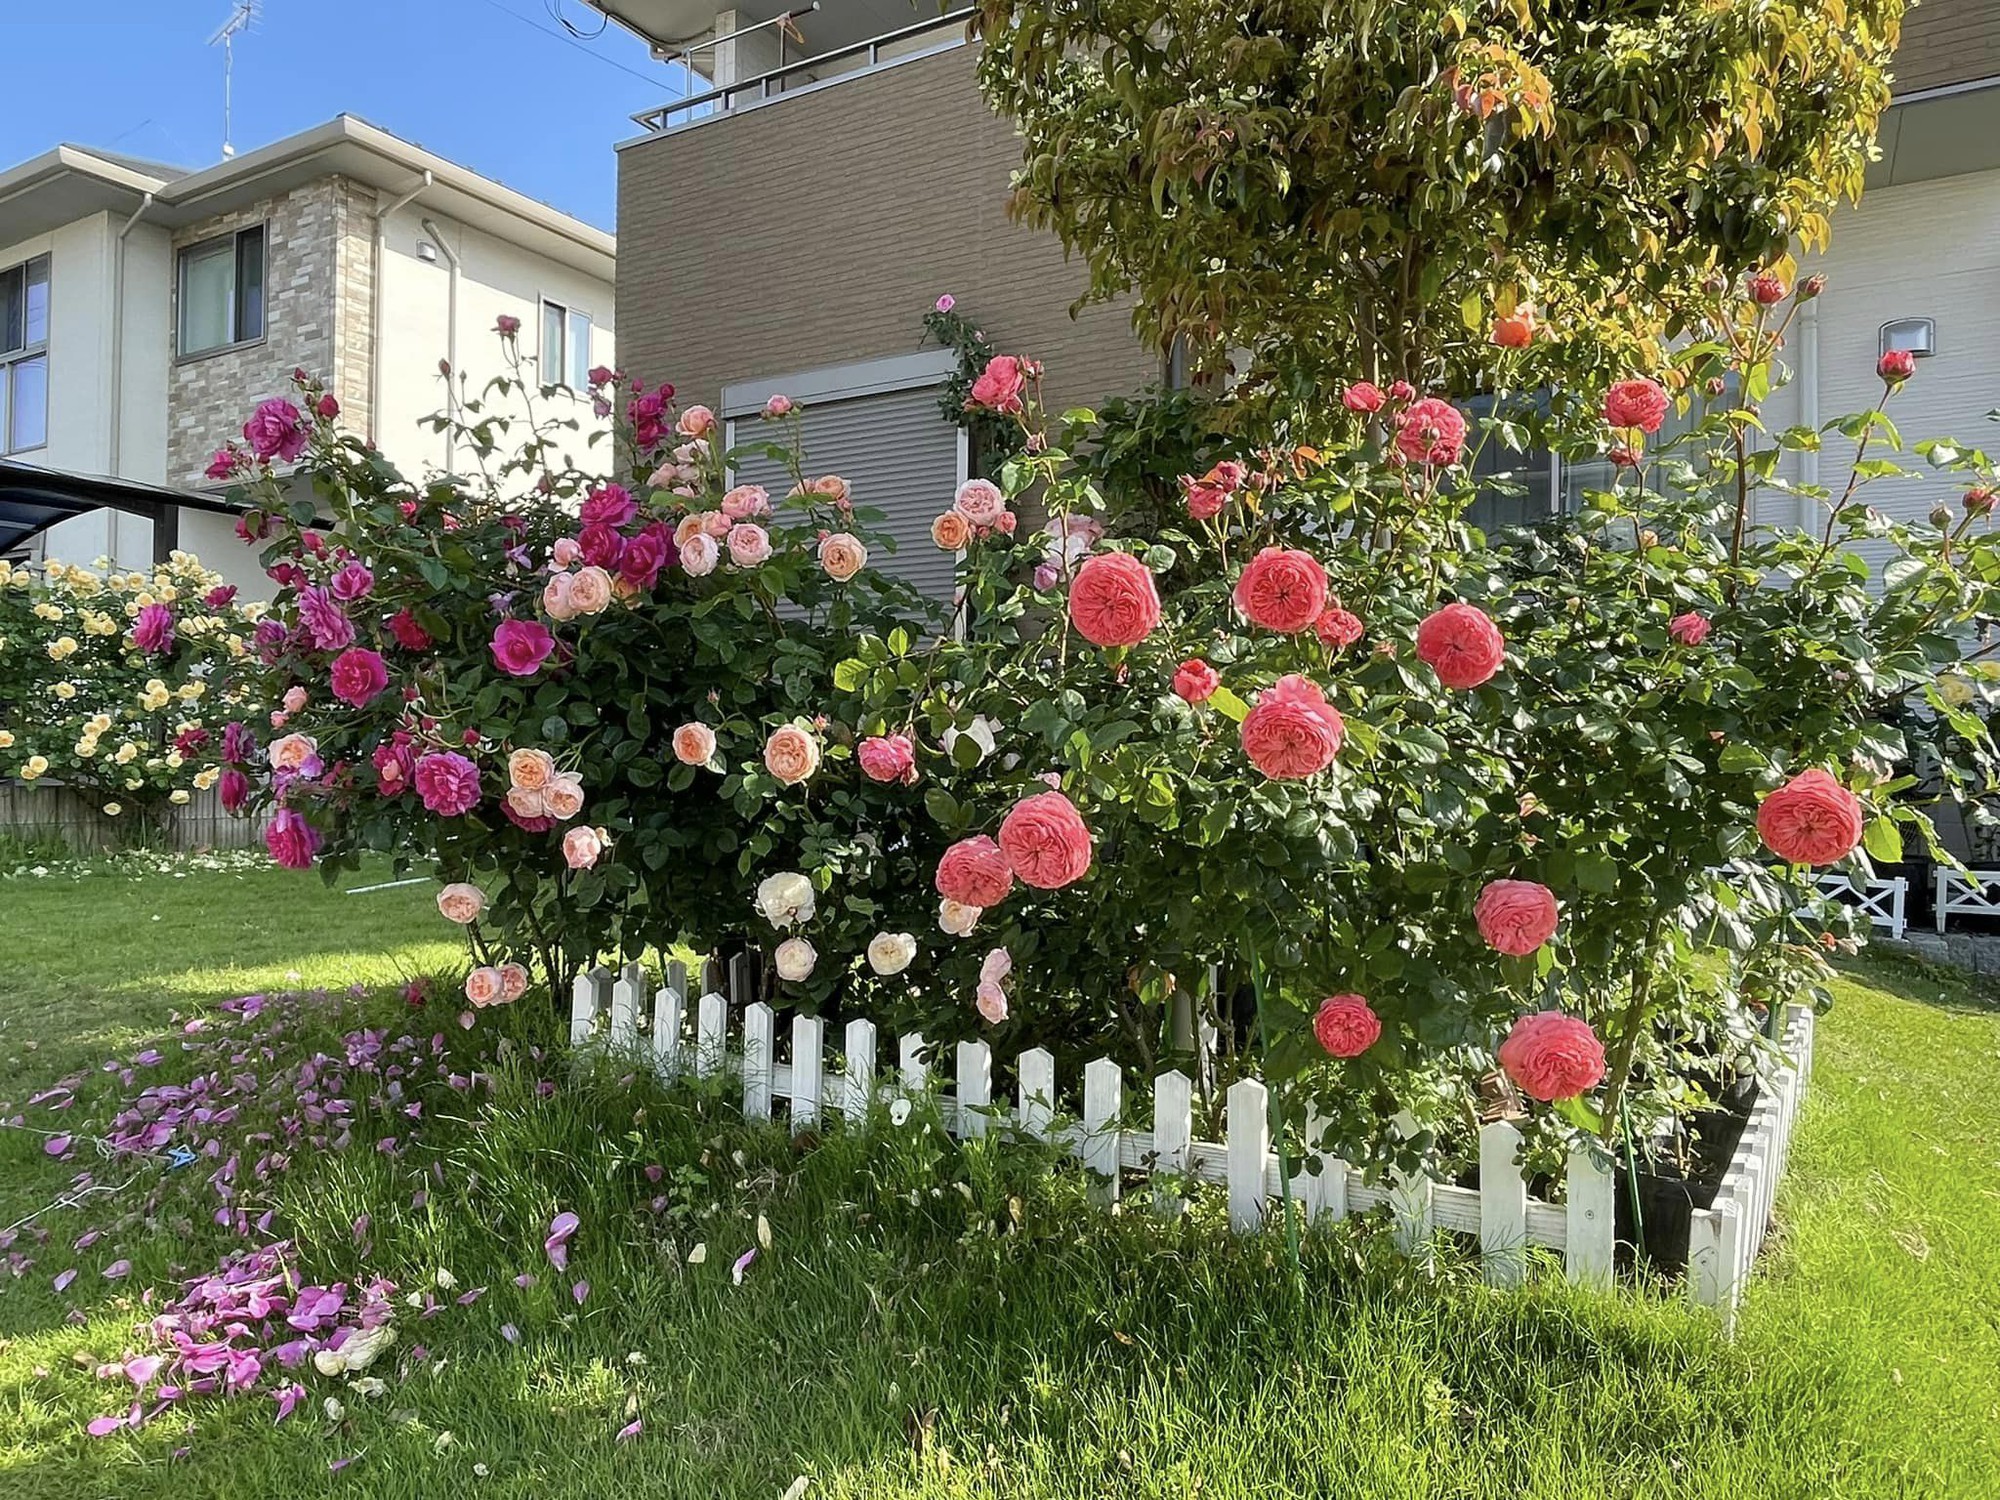 Ngôi nhà lúc nào cũng thơm nức mùi hoa vì có vườn hồng hơn 80 loại của mẹ Việt ở Nhật- Ảnh 3.